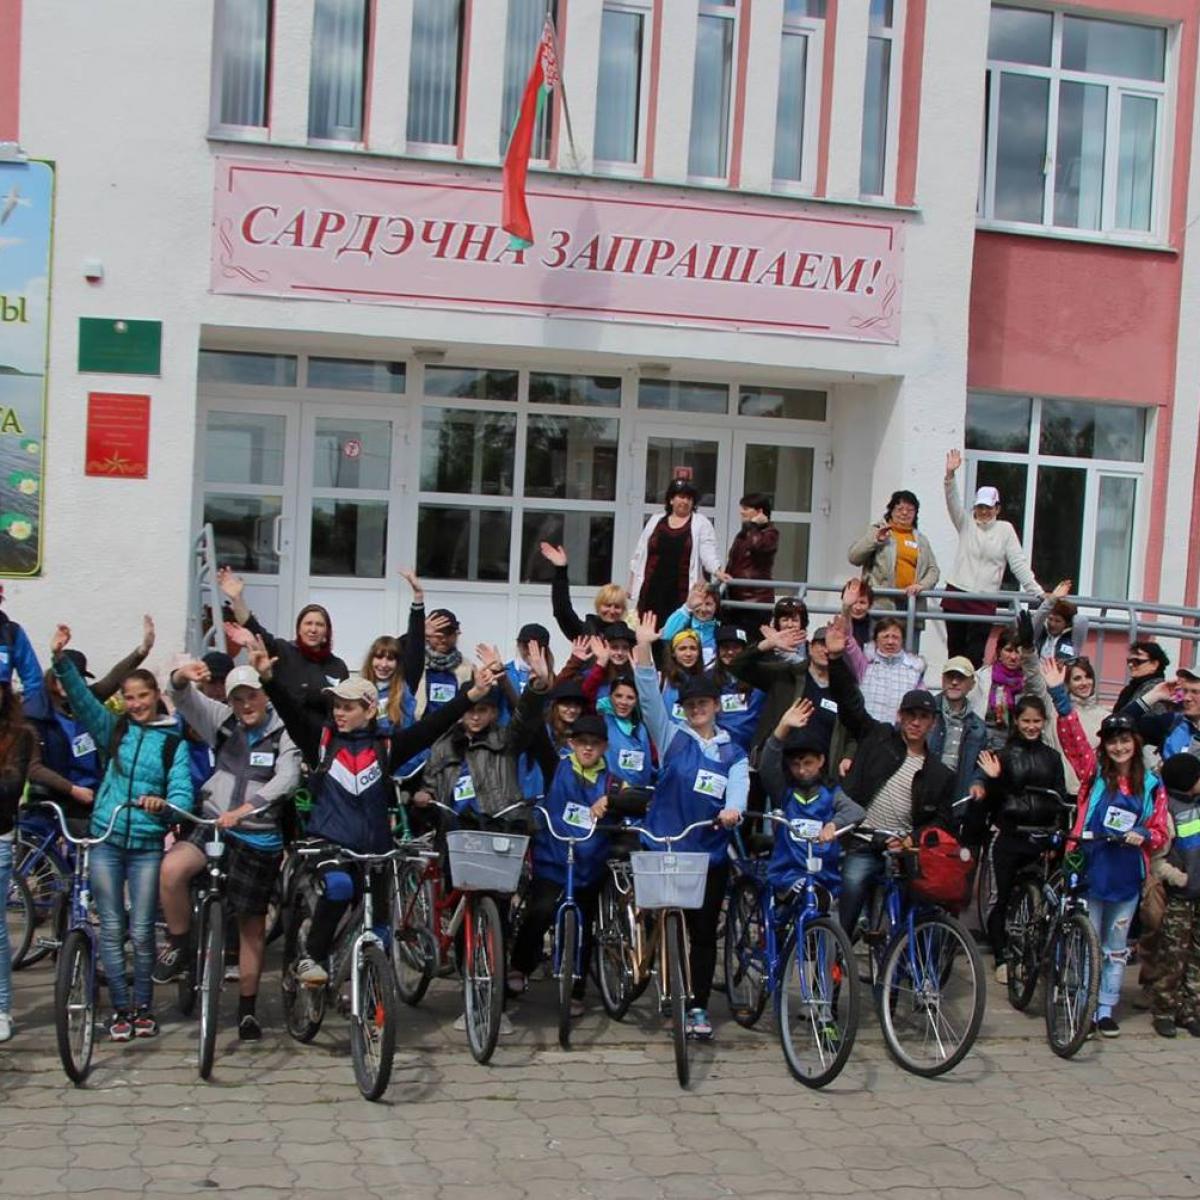 Ежегодный велопробег учеников Здитовской школы–один из способов рассказать о возможностях участия в развитии местного сообщества